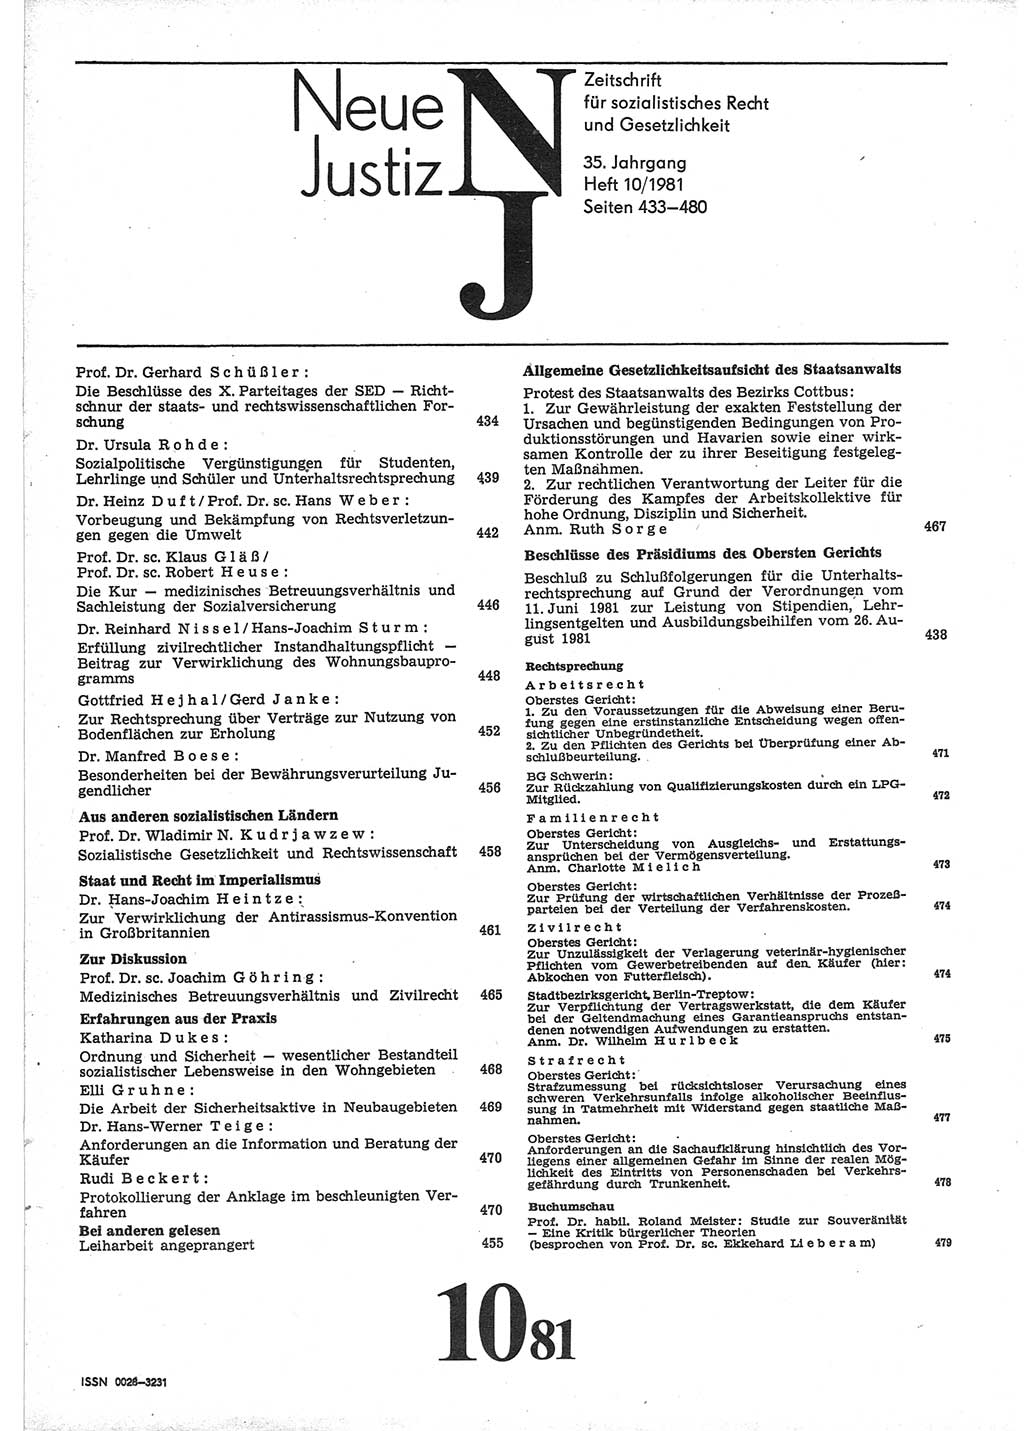 Neue Justiz (NJ), Zeitschrift für sozialistisches Recht und Gesetzlichkeit [Deutsche Demokratische Republik (DDR)], 35. Jahrgang 1981, Seite 433 (NJ DDR 1981, S. 433)